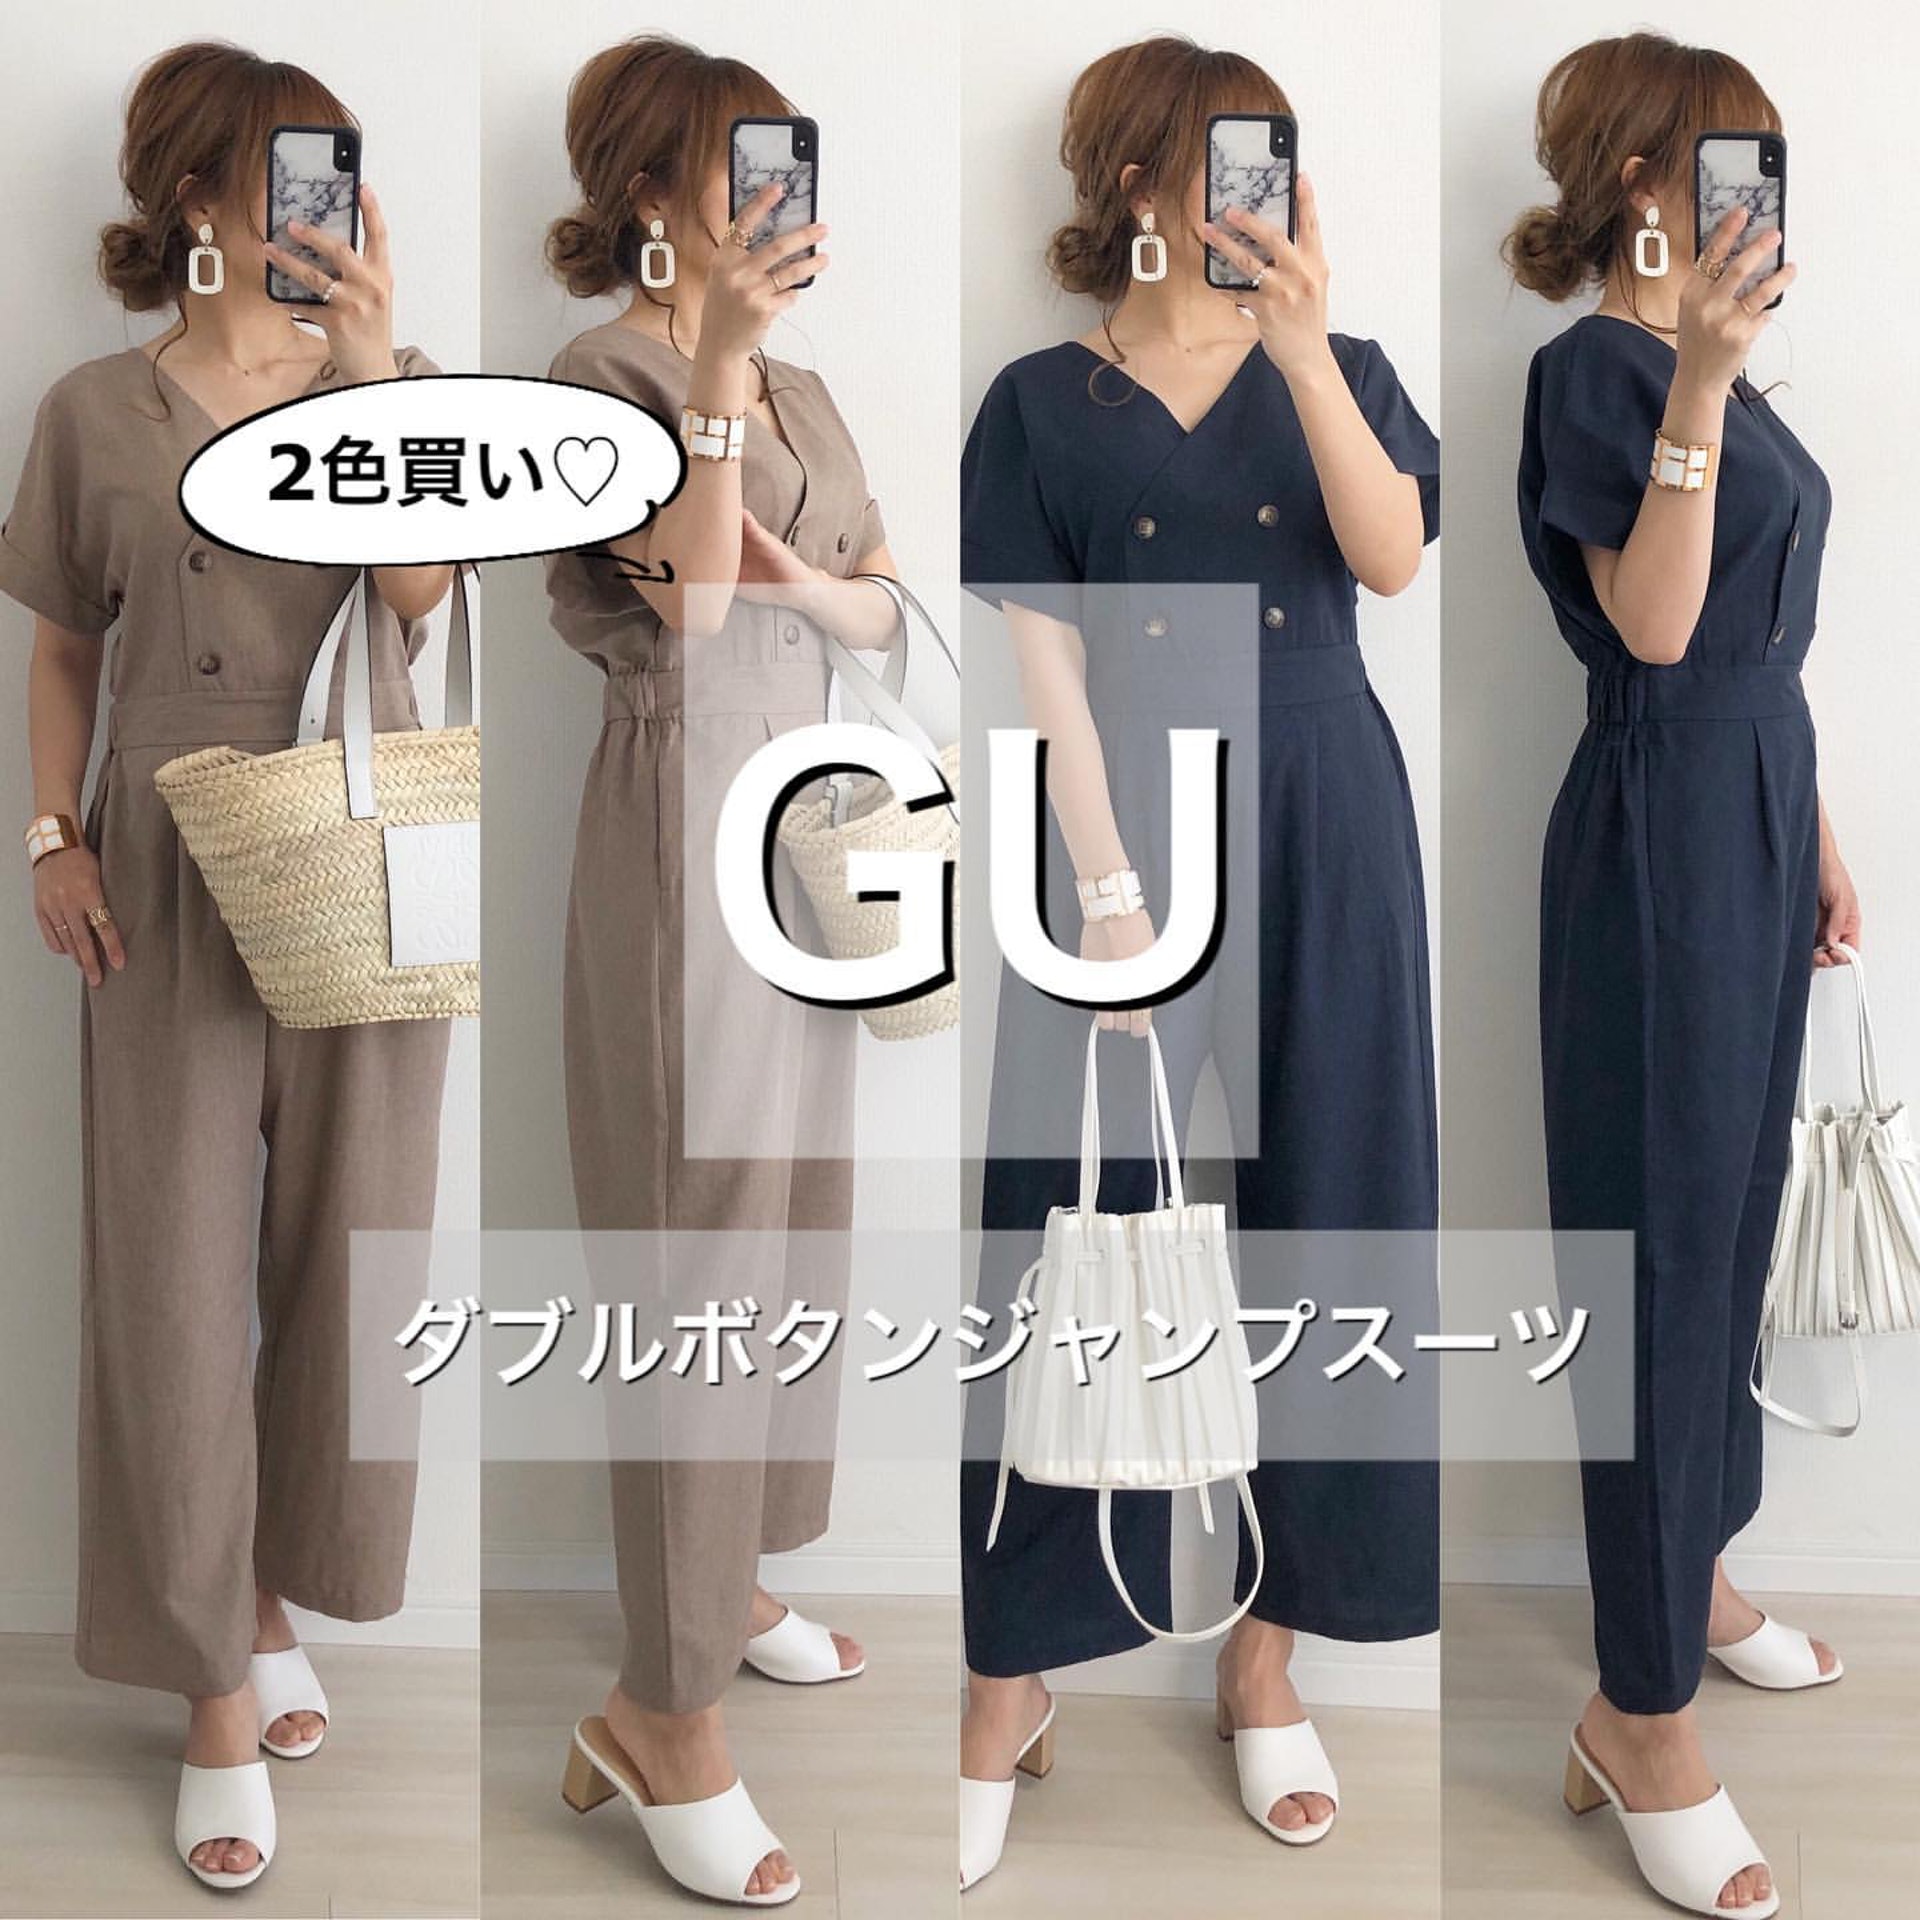 日本女生Miyo購入GU連身褲款。(miyopu@Instagram)